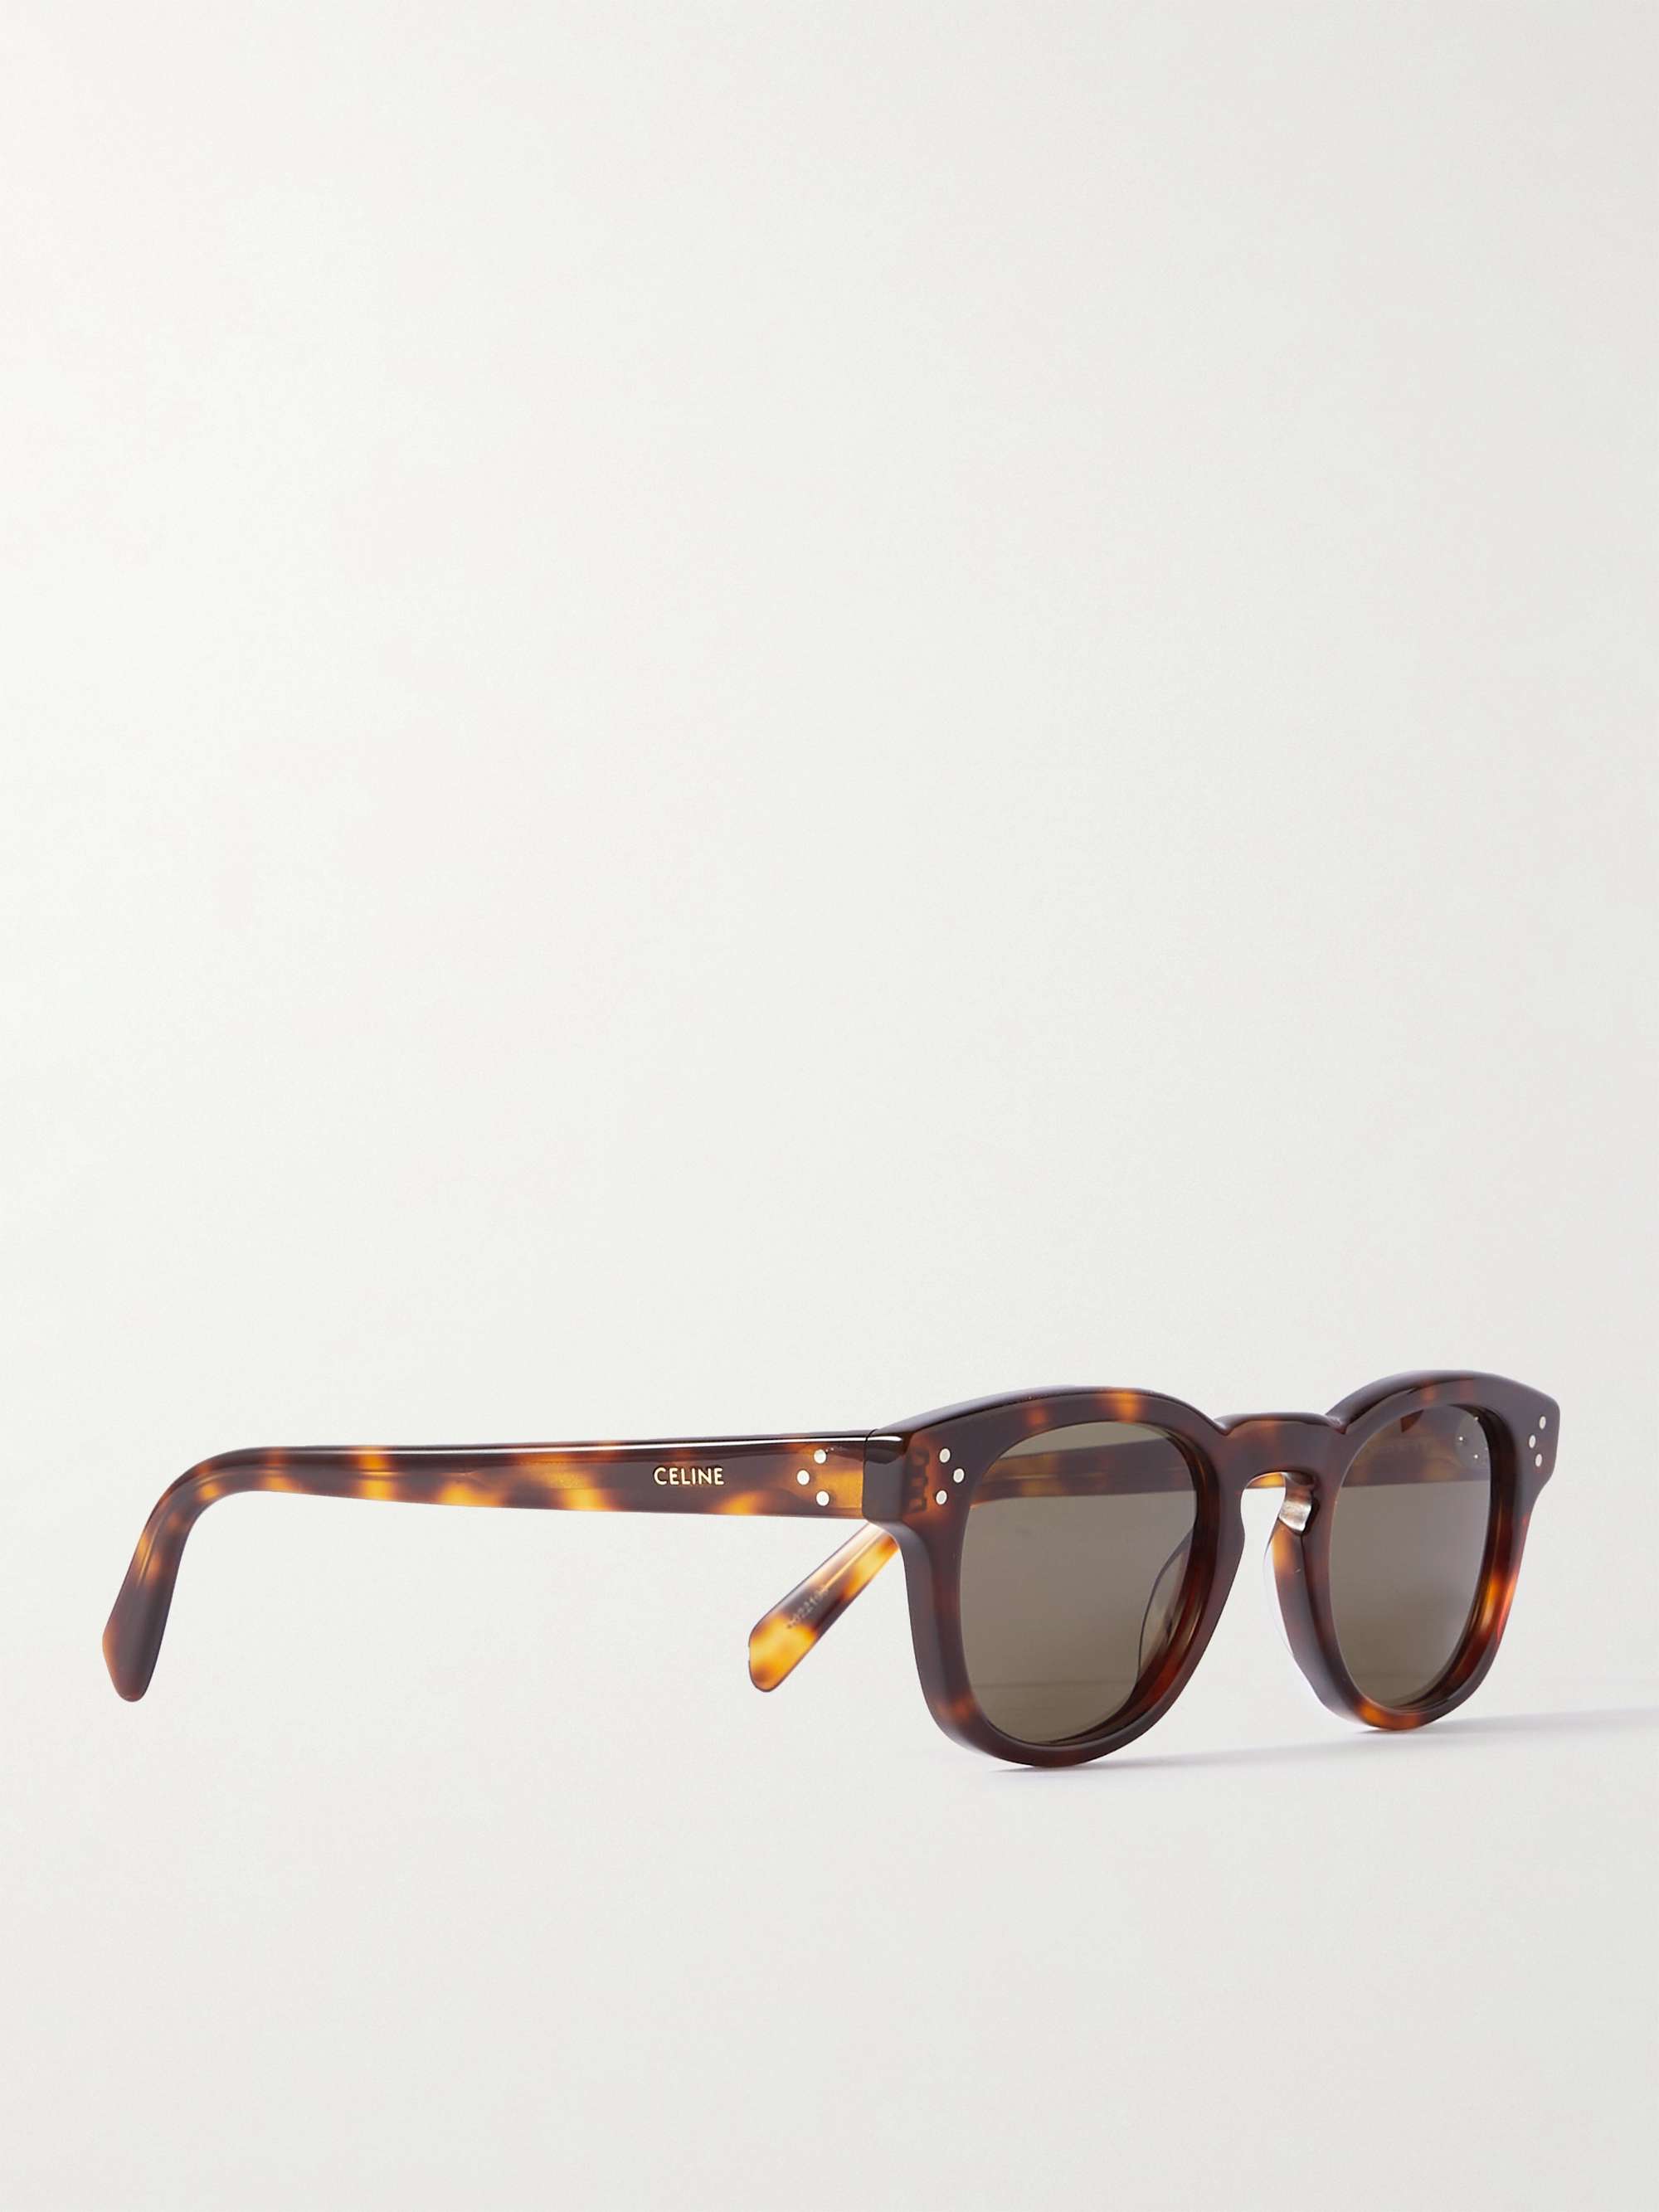 CELINE HOMME D-Frame Tortoiseshell Acetate Sunglasses